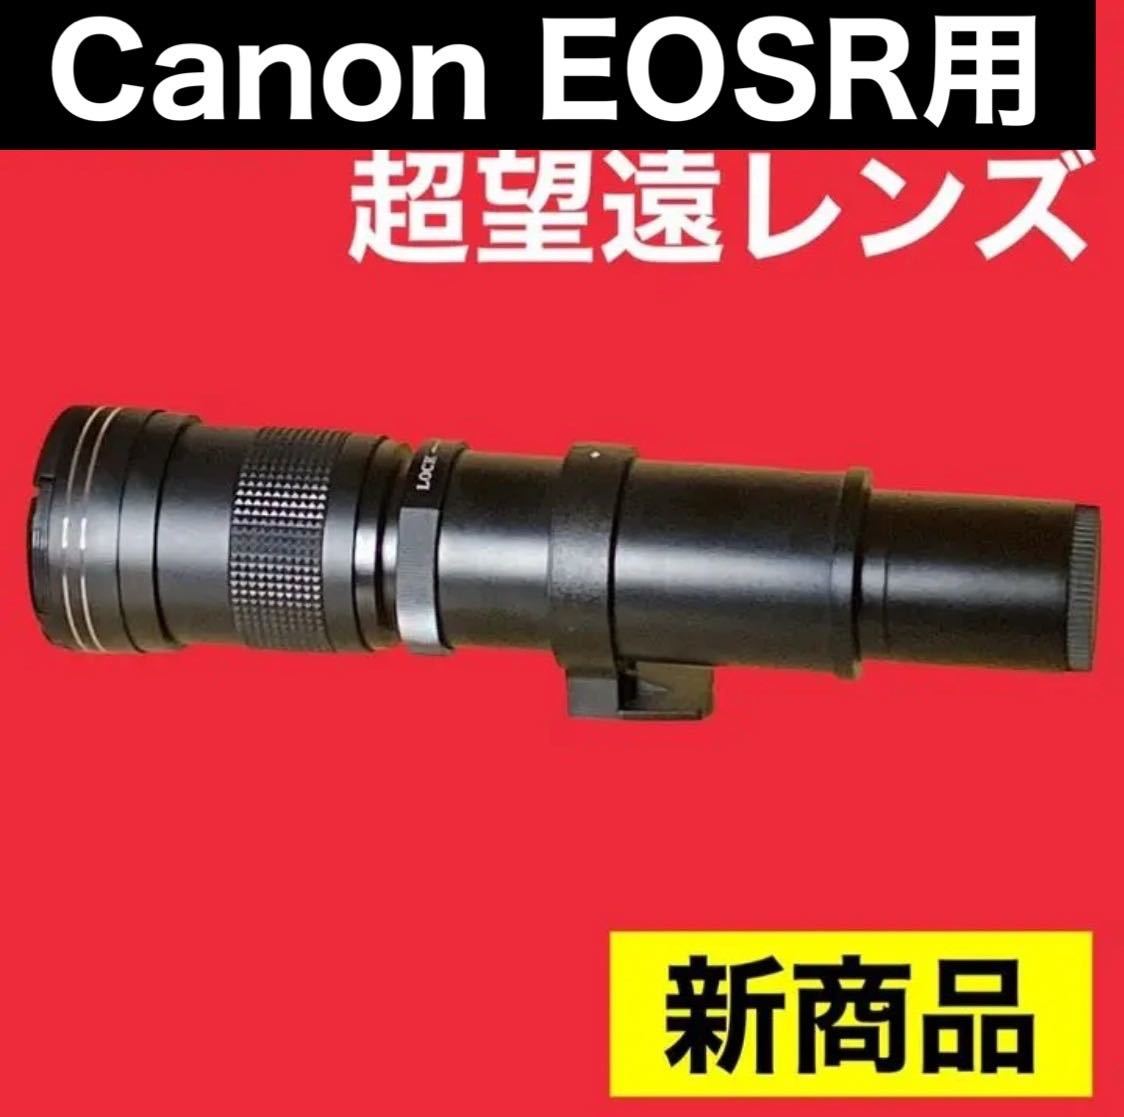 1600mmまでズーム可能！超超超望遠レンズ！Canon EOSRシリーズ対応！美